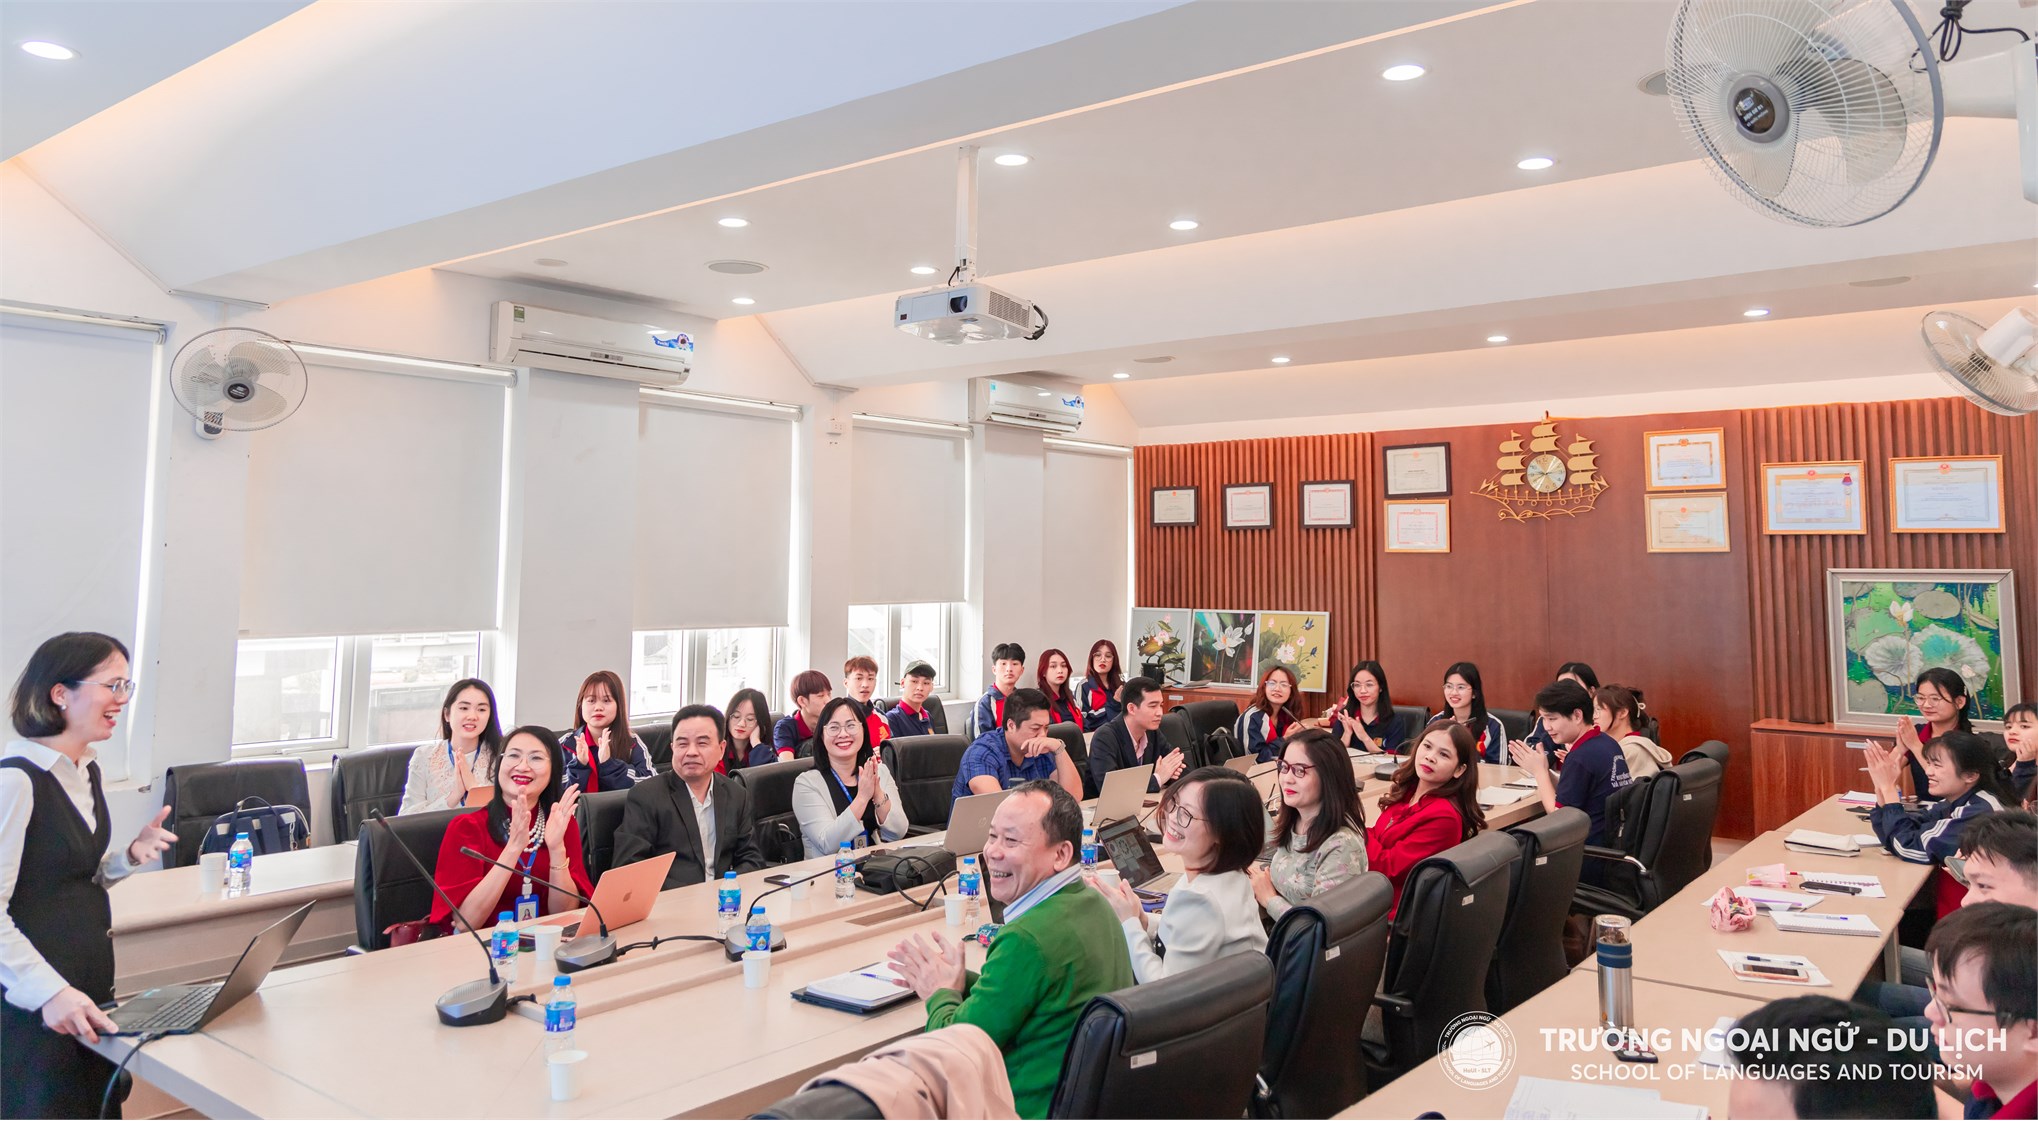 Khoa Tiếng Việt và Văn hóa Việt Nam tổ chức buổi toạ đàm: “Trị liệu ngôn ngữ - Góc nhìn của người trong cuộc”